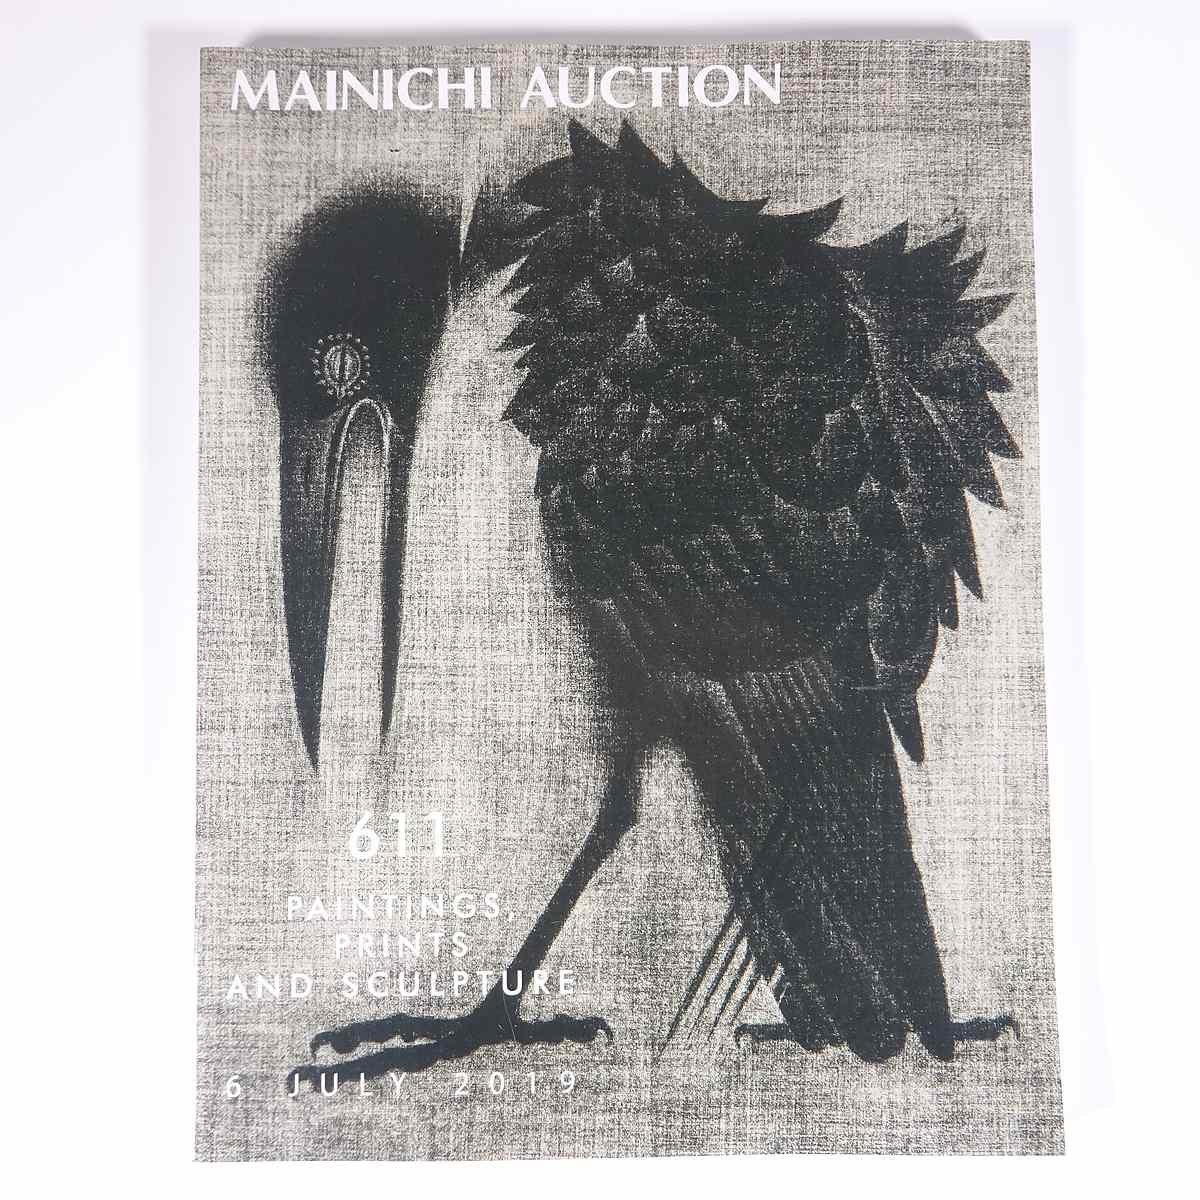 MAINICHI AUCTION 611 Paintings, Prints, Sculptures 2019/7/6 Mainichi Auction Large Books Auction Catalog Catalog Art Fine Art, Painting, Art Book, Collection, Catalog